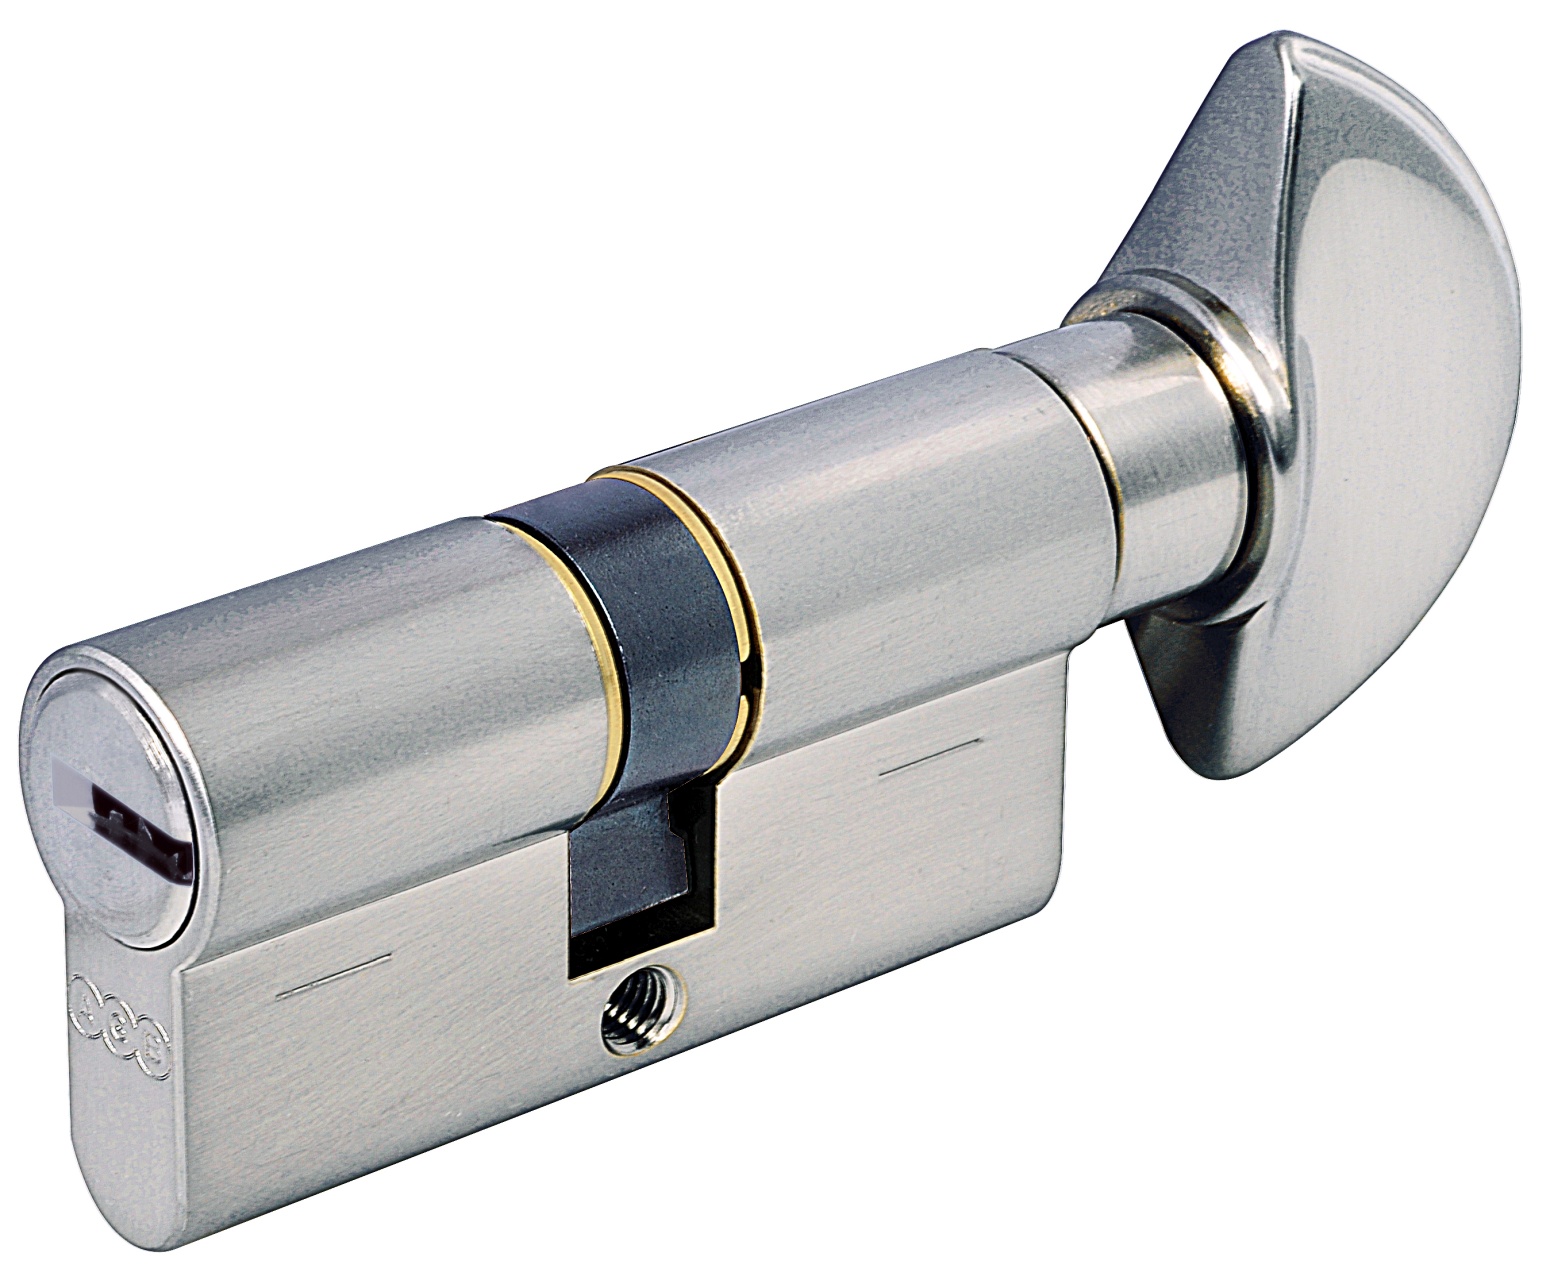 AGB -  Cilindro SCUDO 5000 PS frizionato anti bamping con chiave e pomolo - col. LUCIDO VERNICIATO - lunghezza 100 - misura P-40-10-50